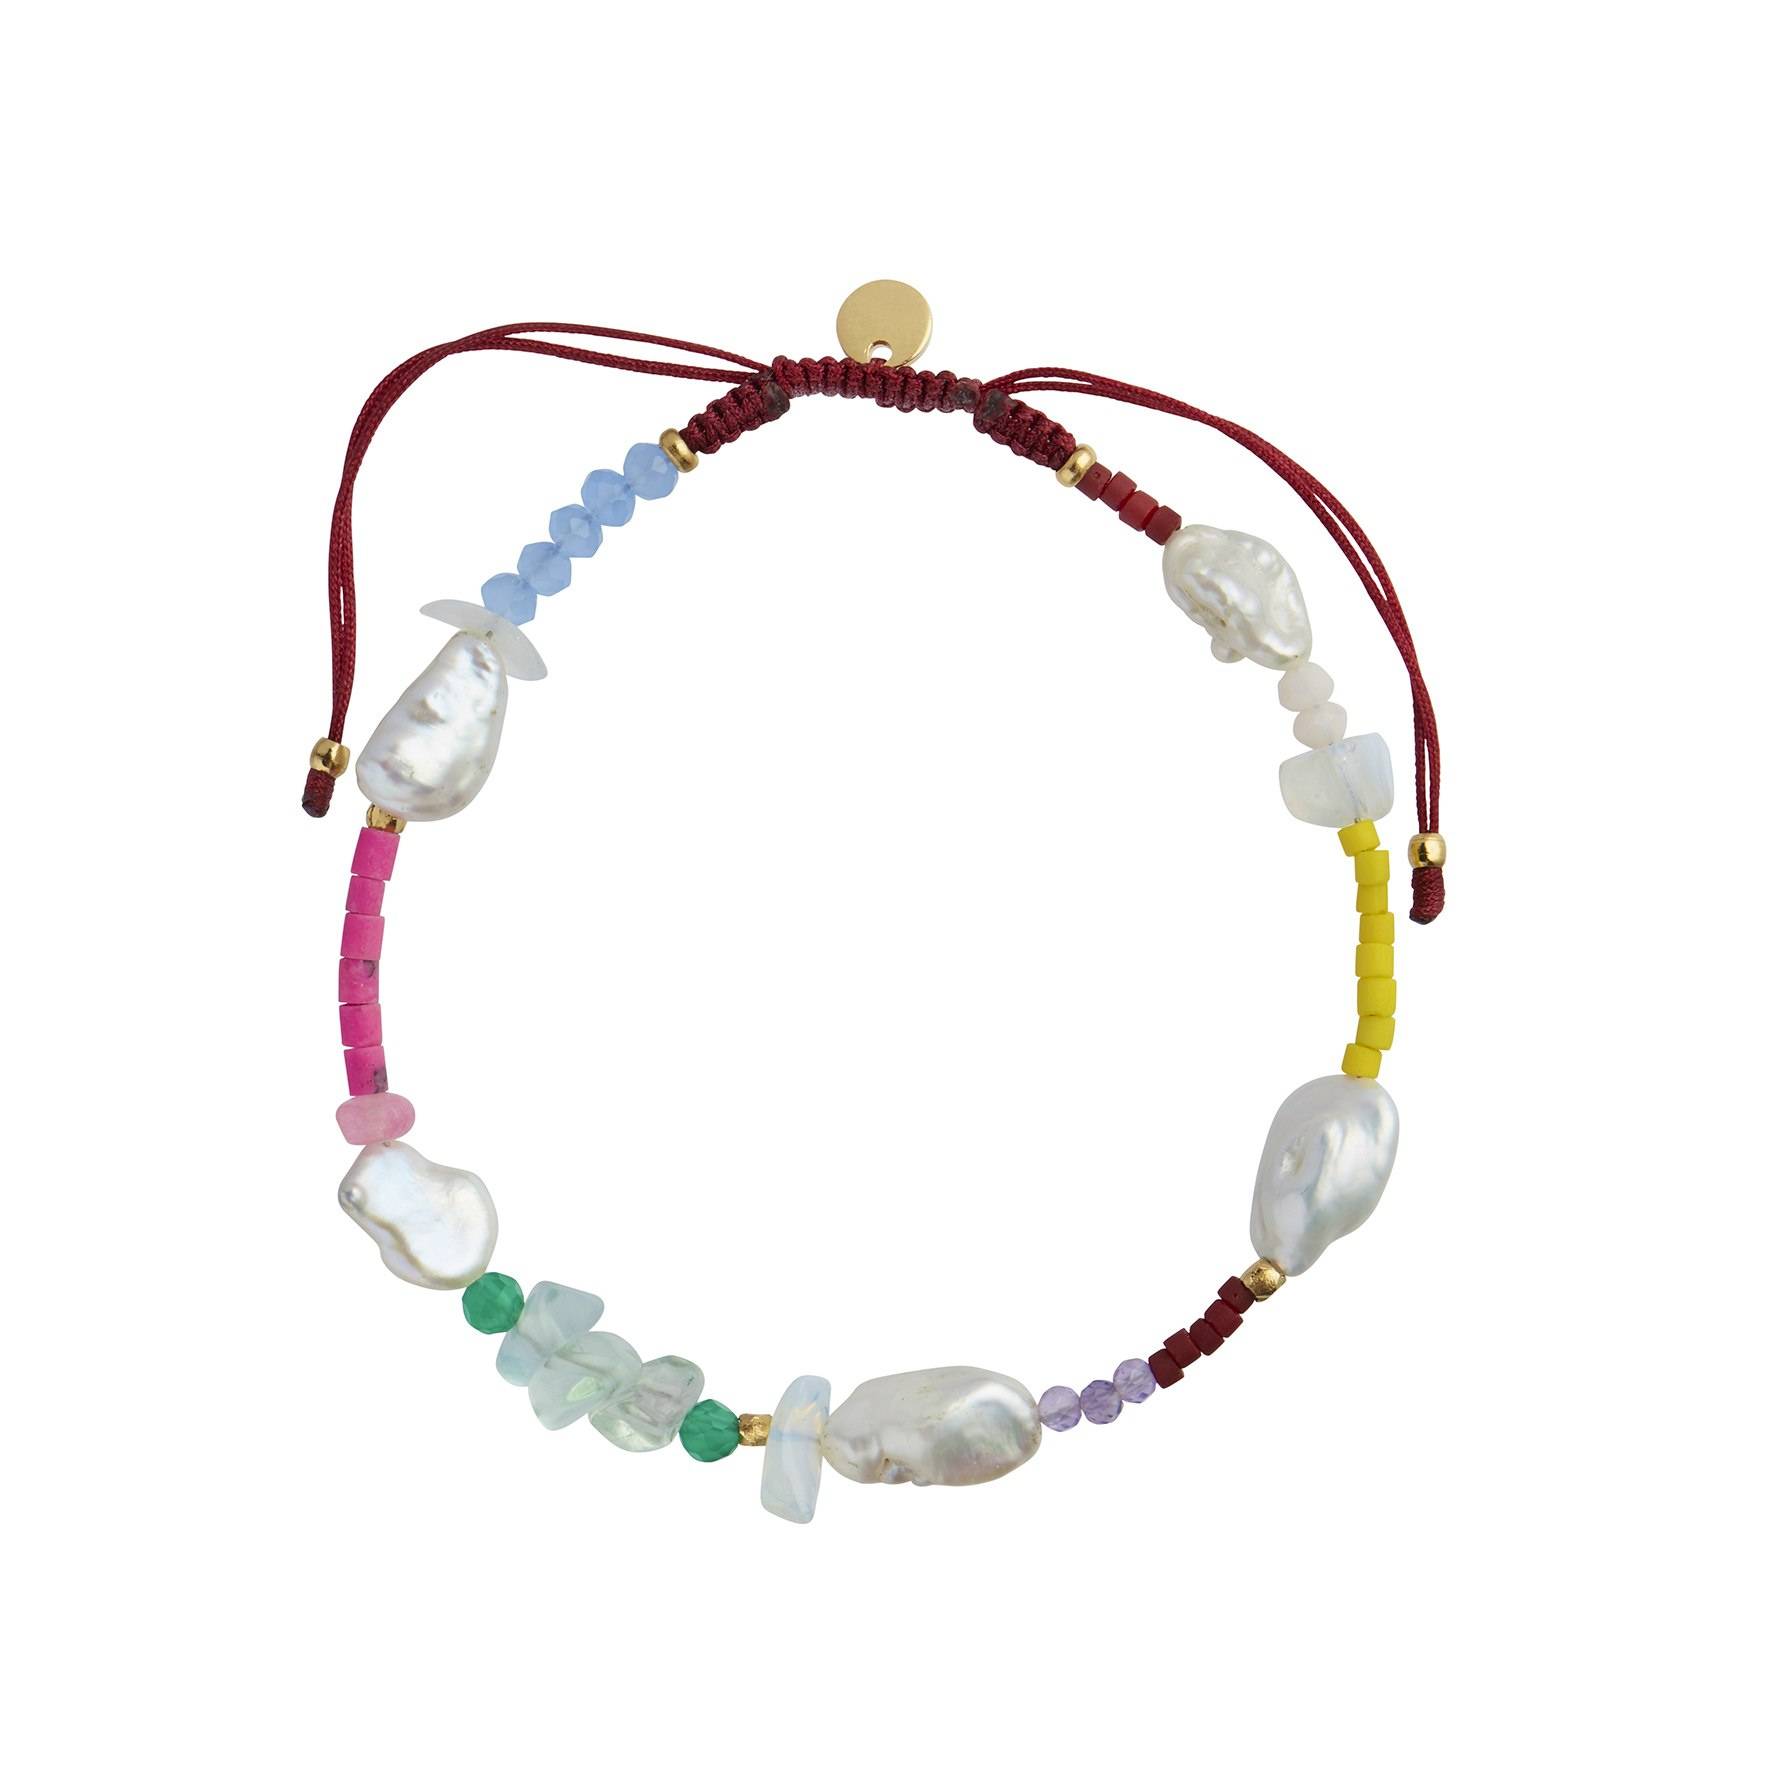 Eldorado Bracelet With Venice Beach Mix & Burgundy Ribbon fra STINE A Jewelry i Nylon